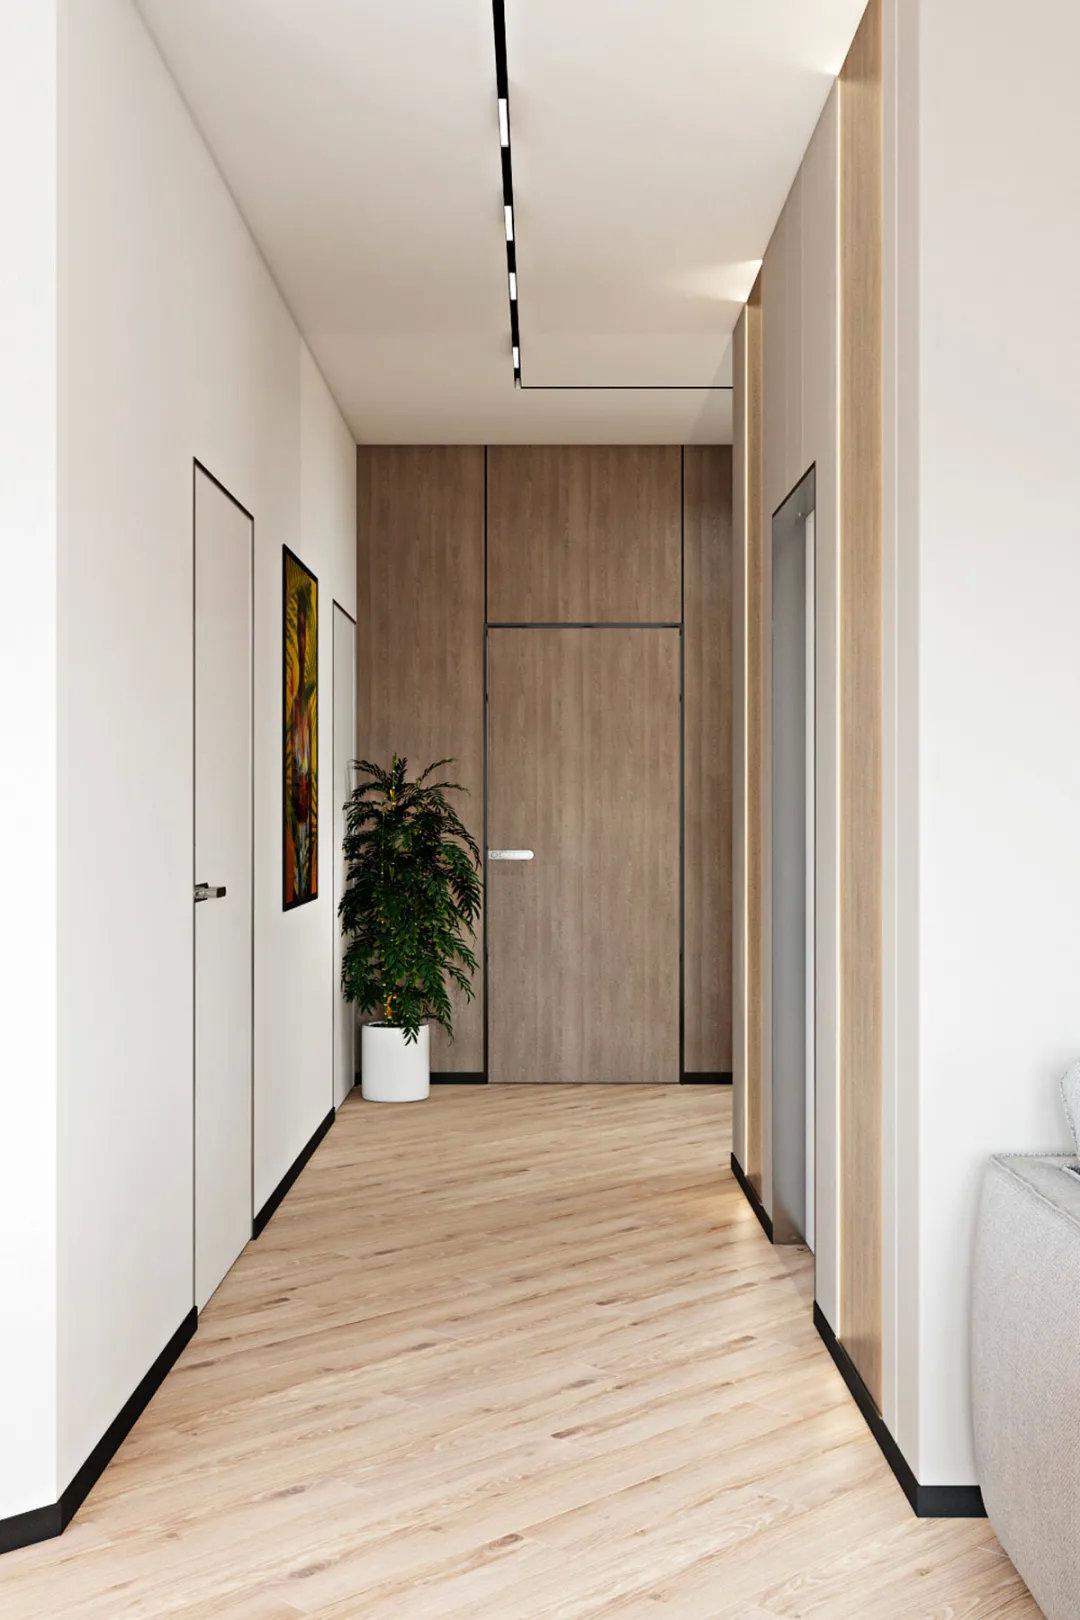 走廊以木地板的地面,加入隐形门的设计,结合挂画与大盆栽,也让空间